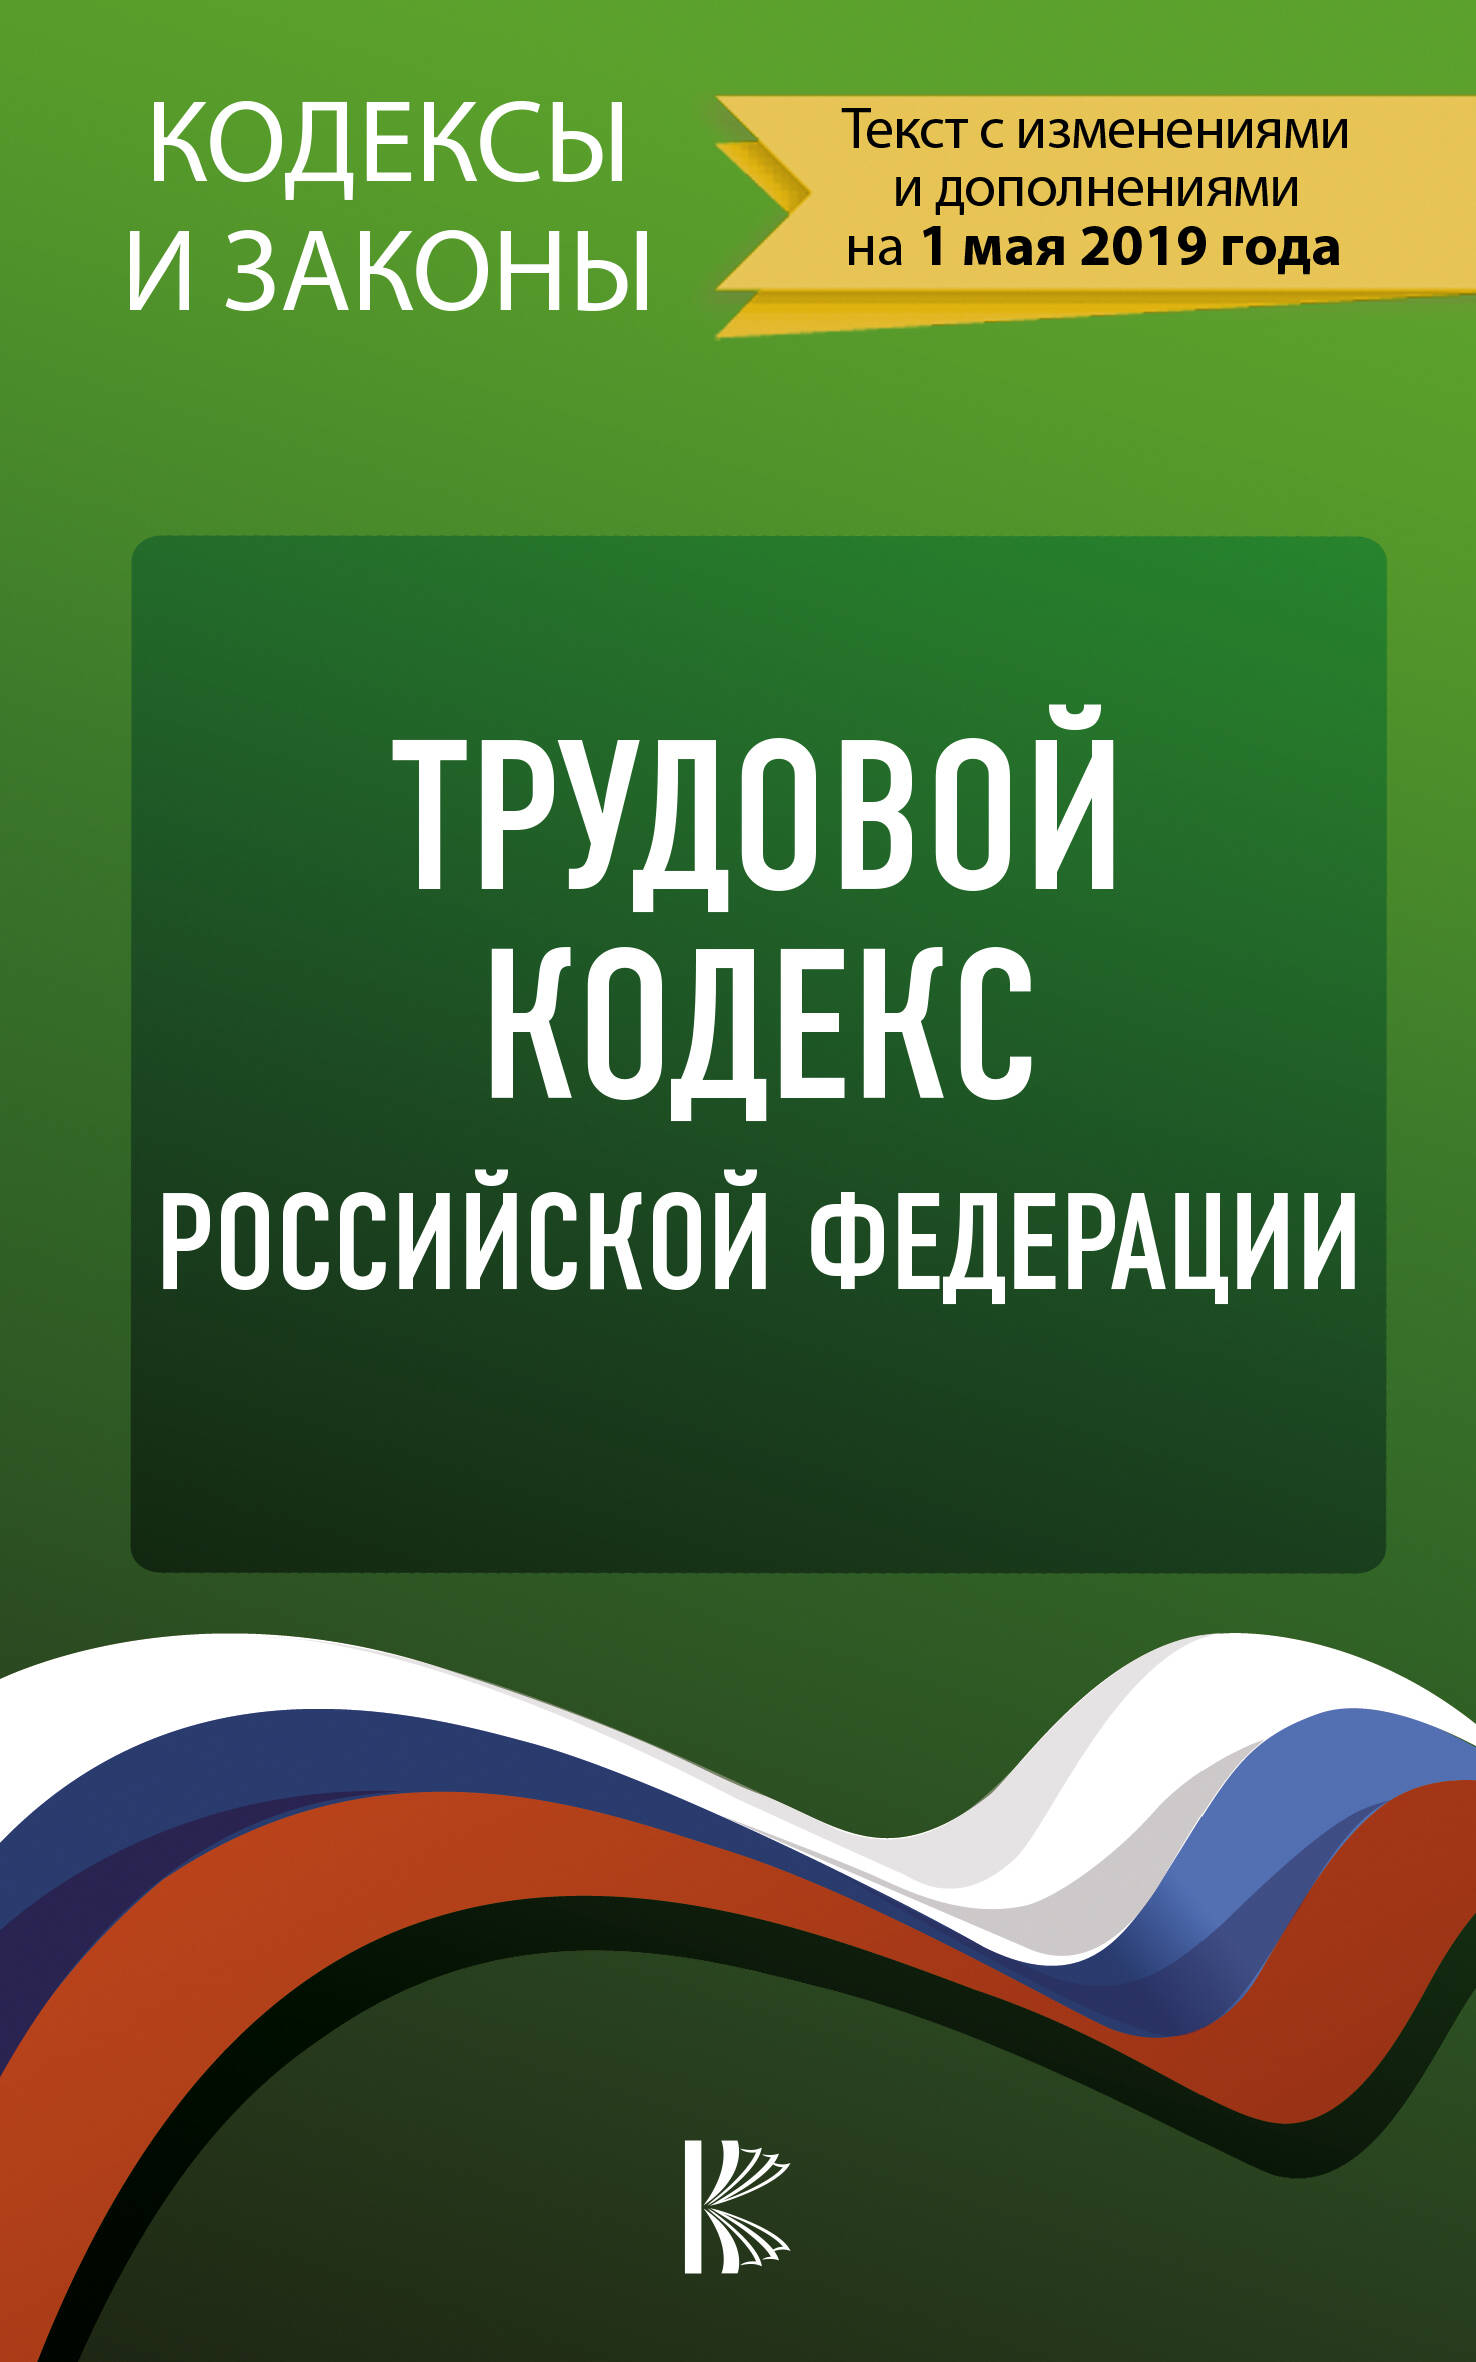  Трудовой Кодекс Российской Федерации на 1 мая 2019 года - страница 0